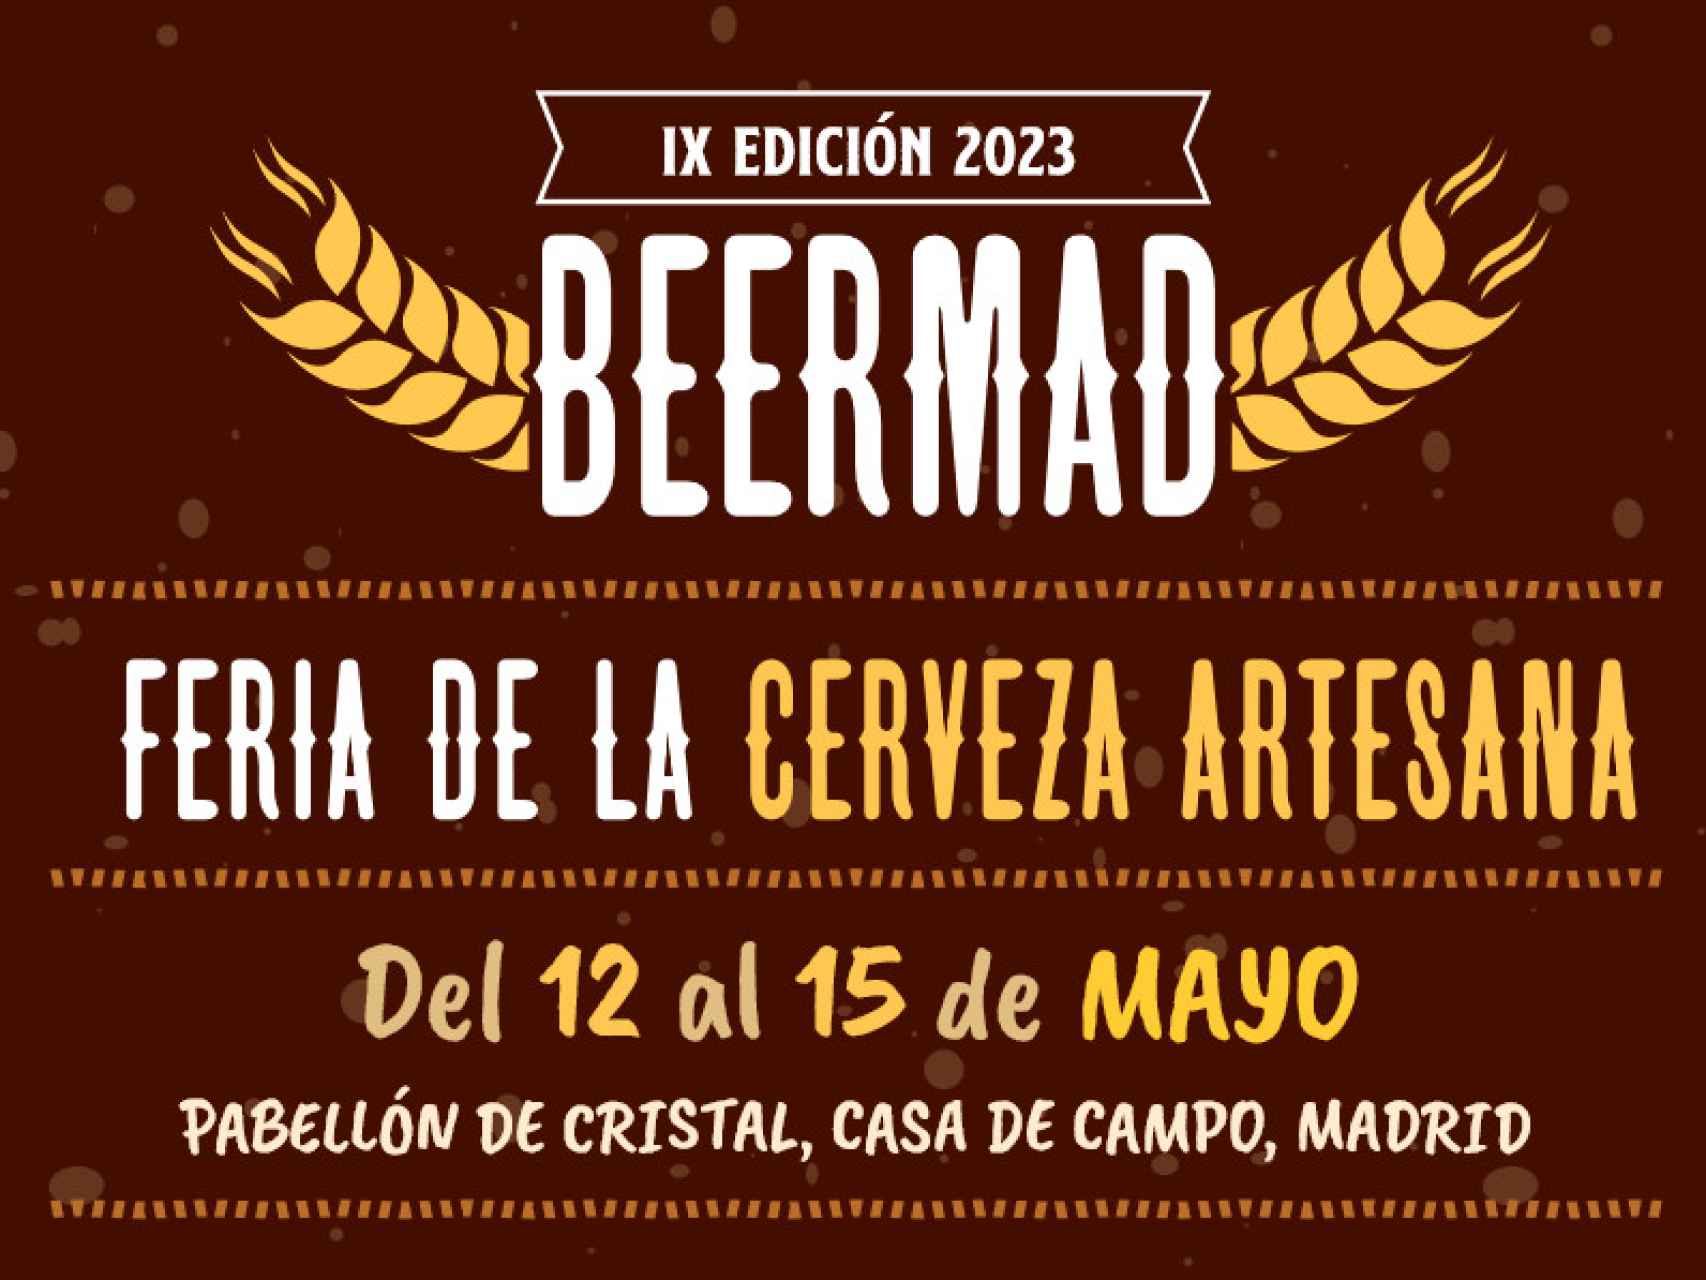 Cartel BeerMad 2023.